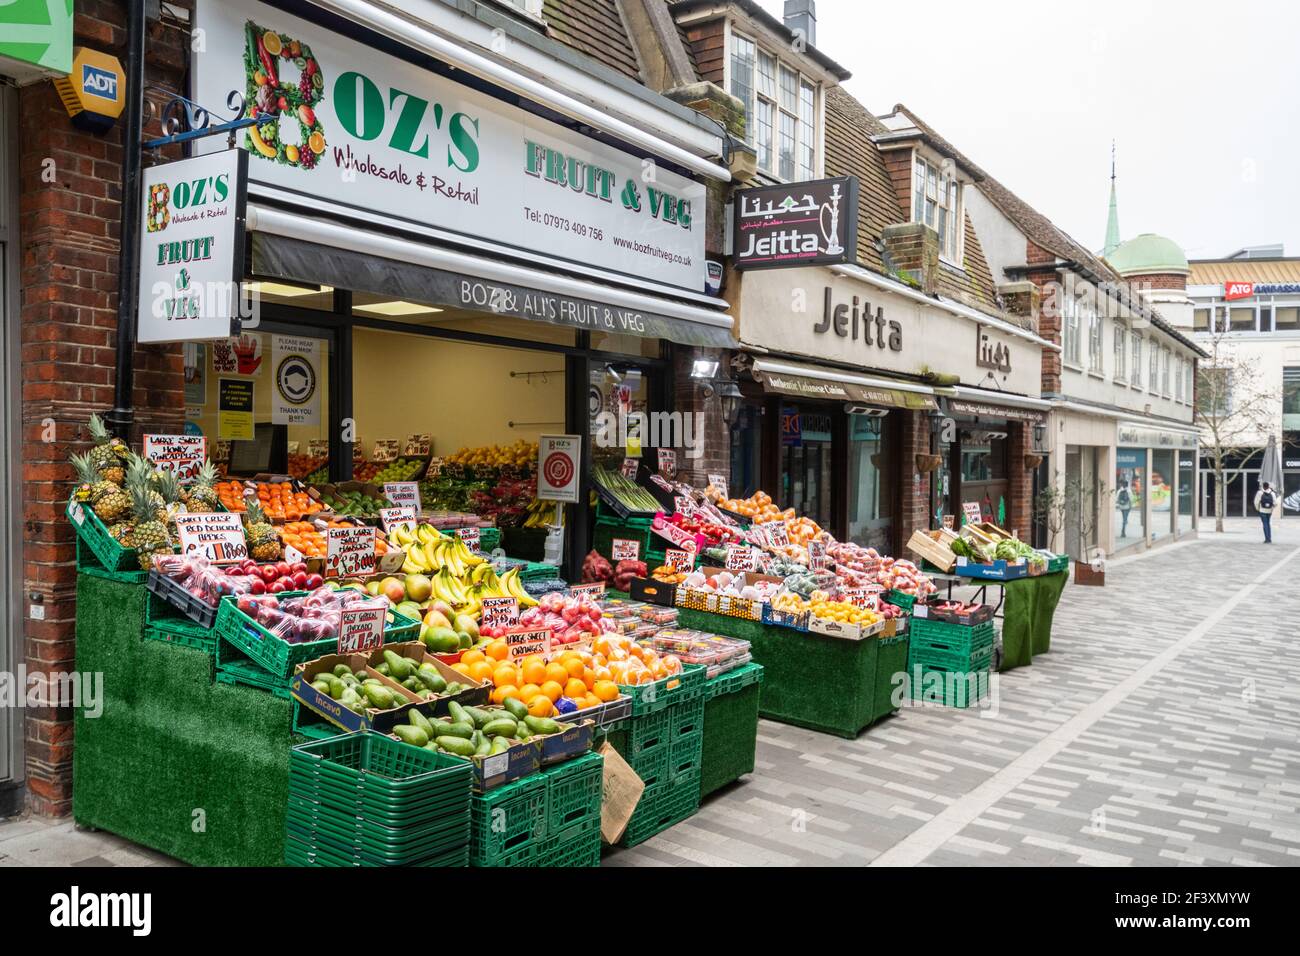 Negozio di greengrocers chiamato Boz's, un business nel centro di Woking, Surrey, Regno Unito, con strada tranquilla durante il coronavirus covid-19 2021 pandemic lockdown Foto Stock